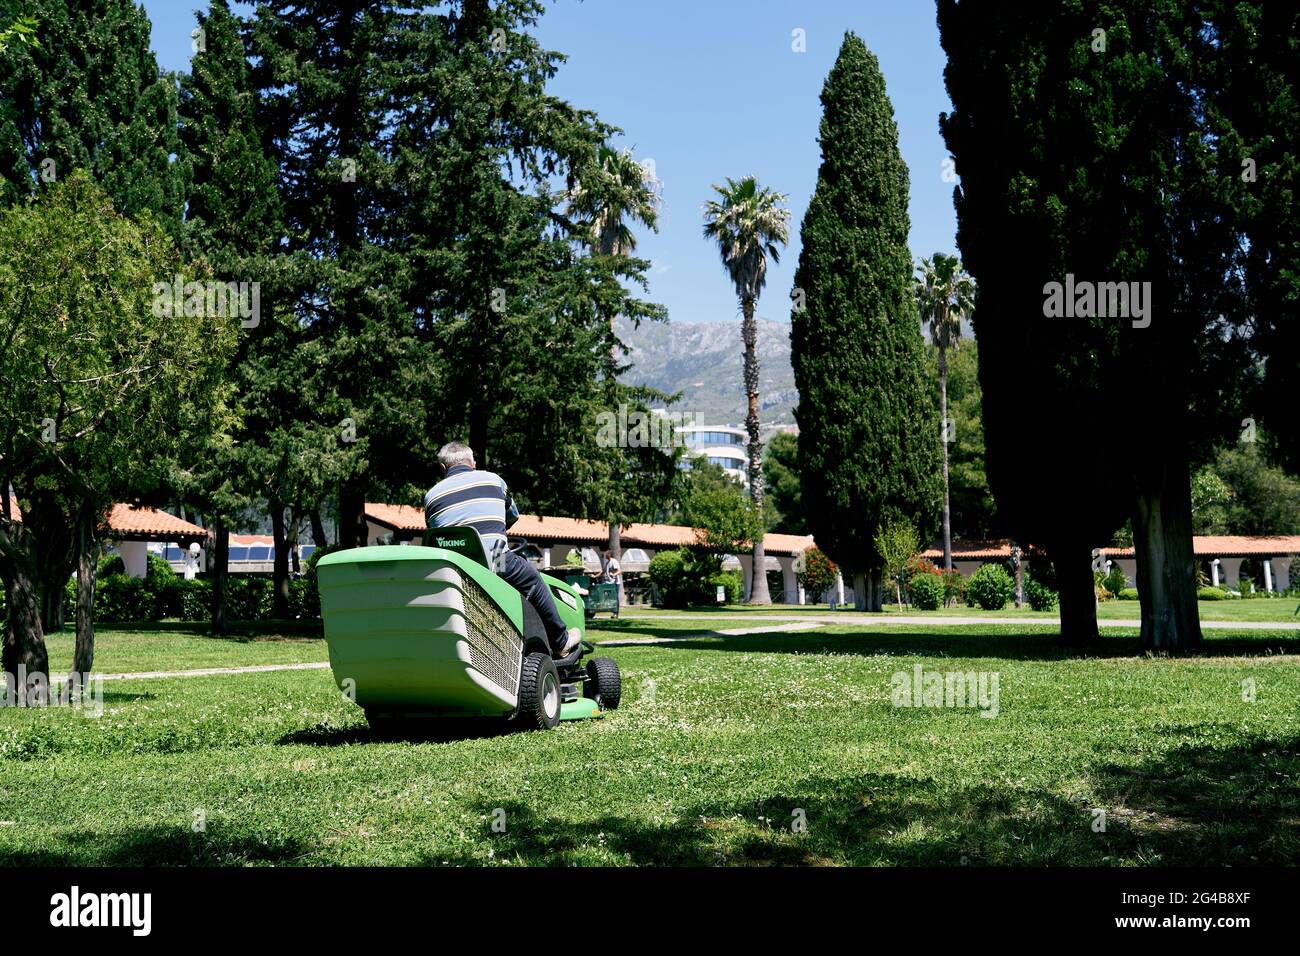 Der Mensch fährt im Park mit einem grünen großen Rasenmäher. Rückansicht Stockfoto